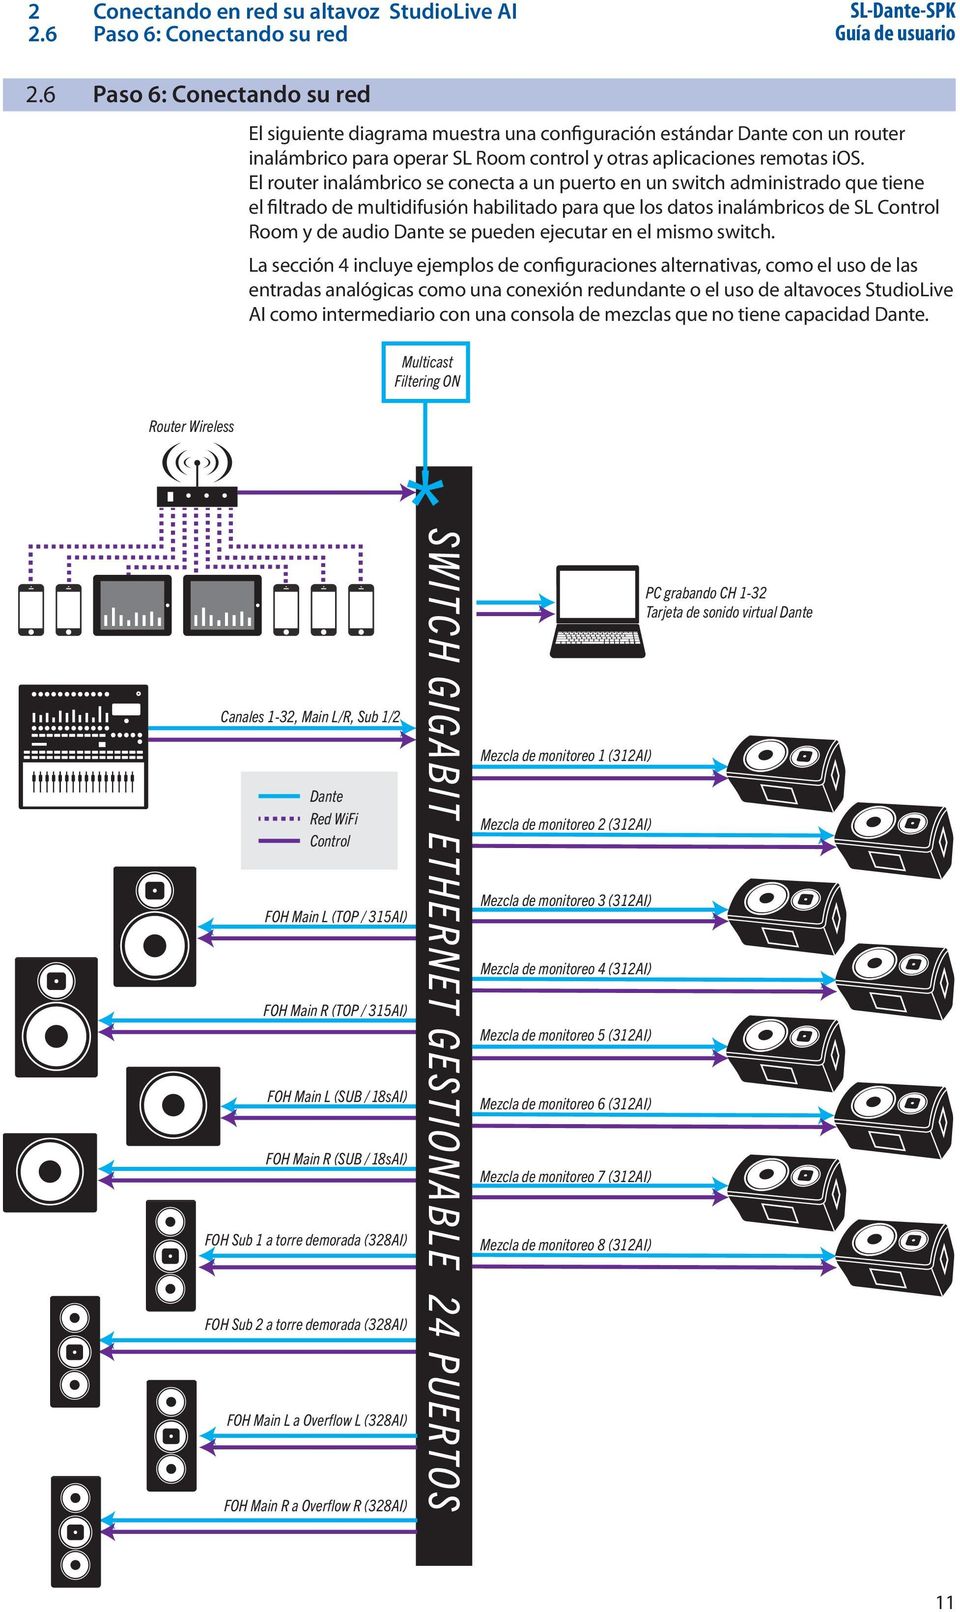 El router inalámbrico se conecta a un puerto en un switch administrado que tiene el filtrado de multidifusión habilitado para que los datos inalámbricos de SL Control Room y de audio Dante se pueden